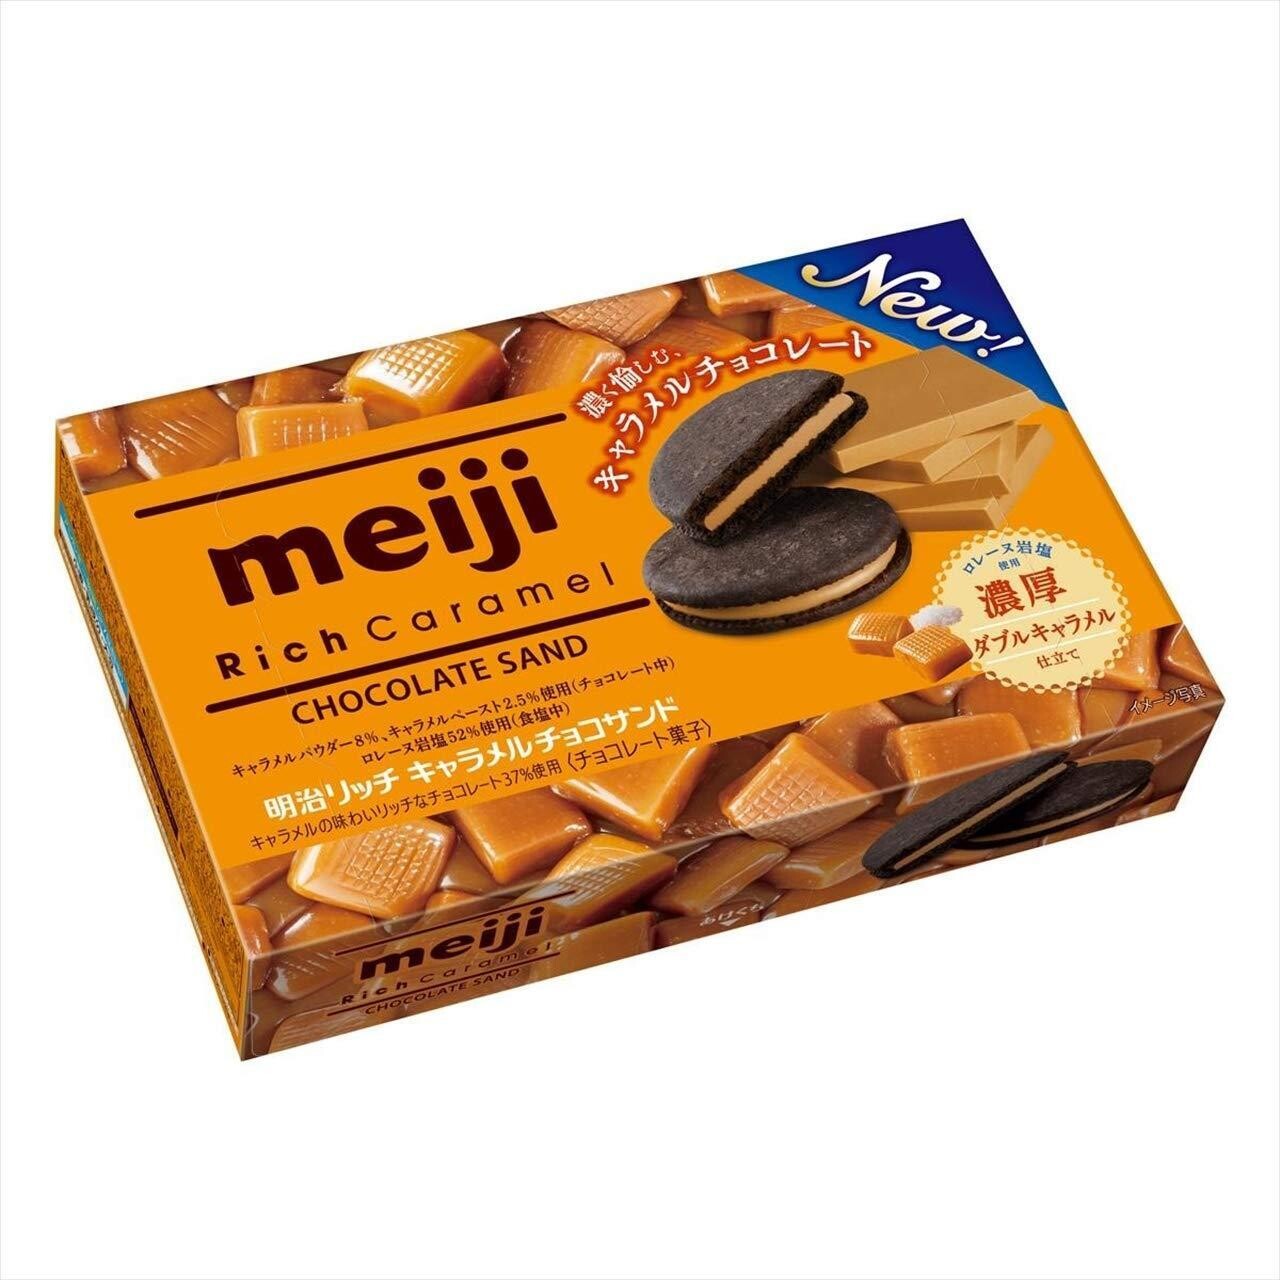 Meiji Rich Caramel Chocolate Sand Biscuit